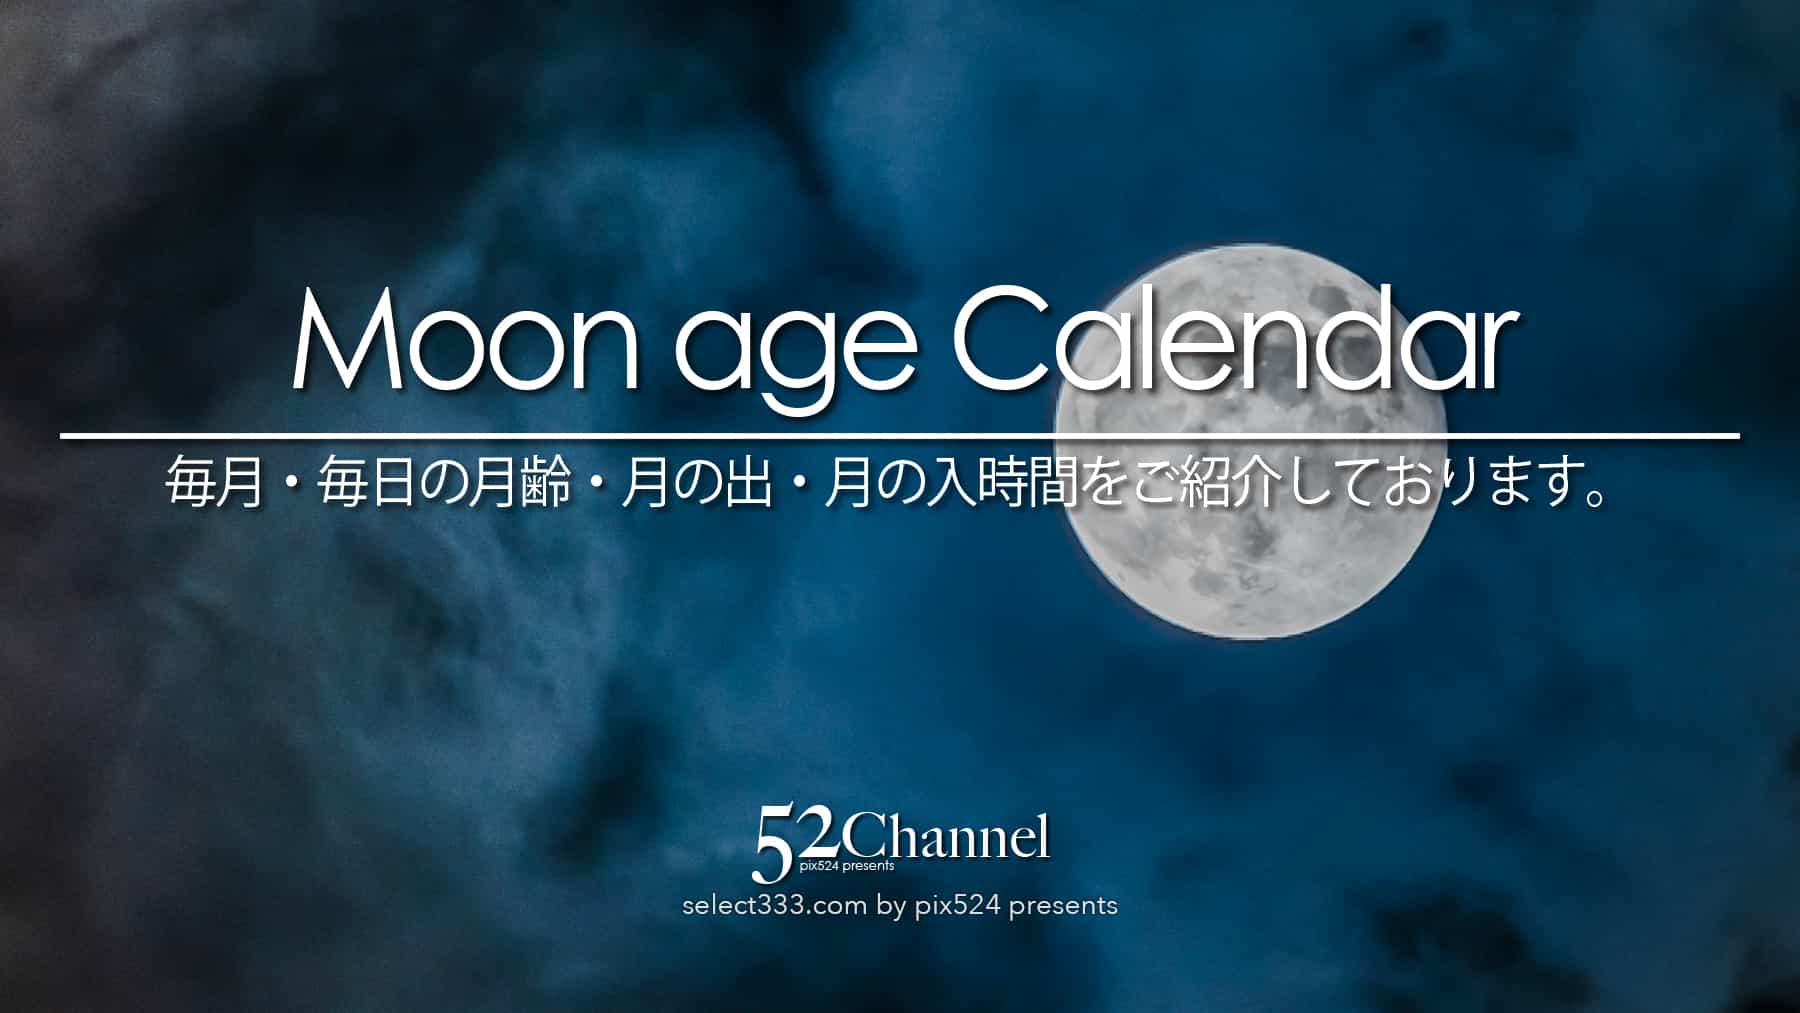 写真を楽しむブログ 撮影地と撮影方法｜月齢カレンダー：毎月の月の撮影候補日時を紹介しています。月は毎日見える形を変えて夜空で輝きます。月の観測や撮影はいつも楽しめます。：writing and Photo by pix524:Masaya Konishi